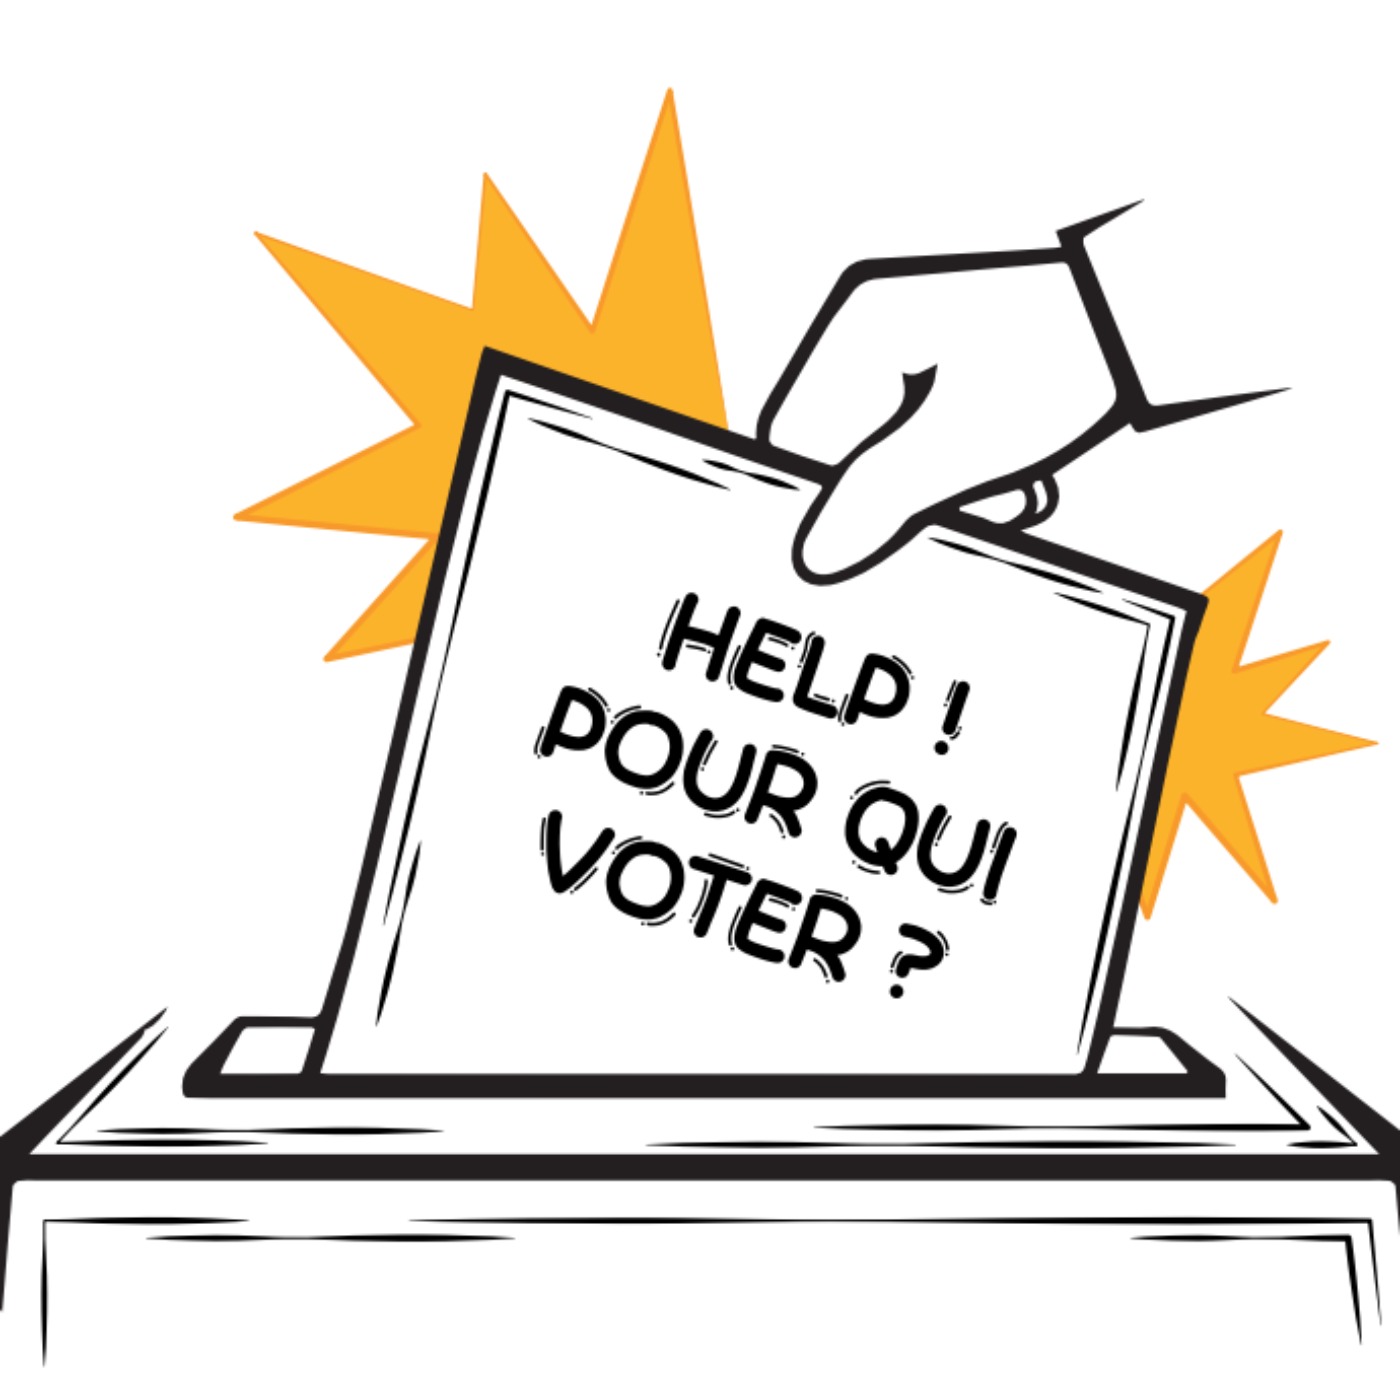 Help ! Pour qui voter ? – Le futur de la Belgique